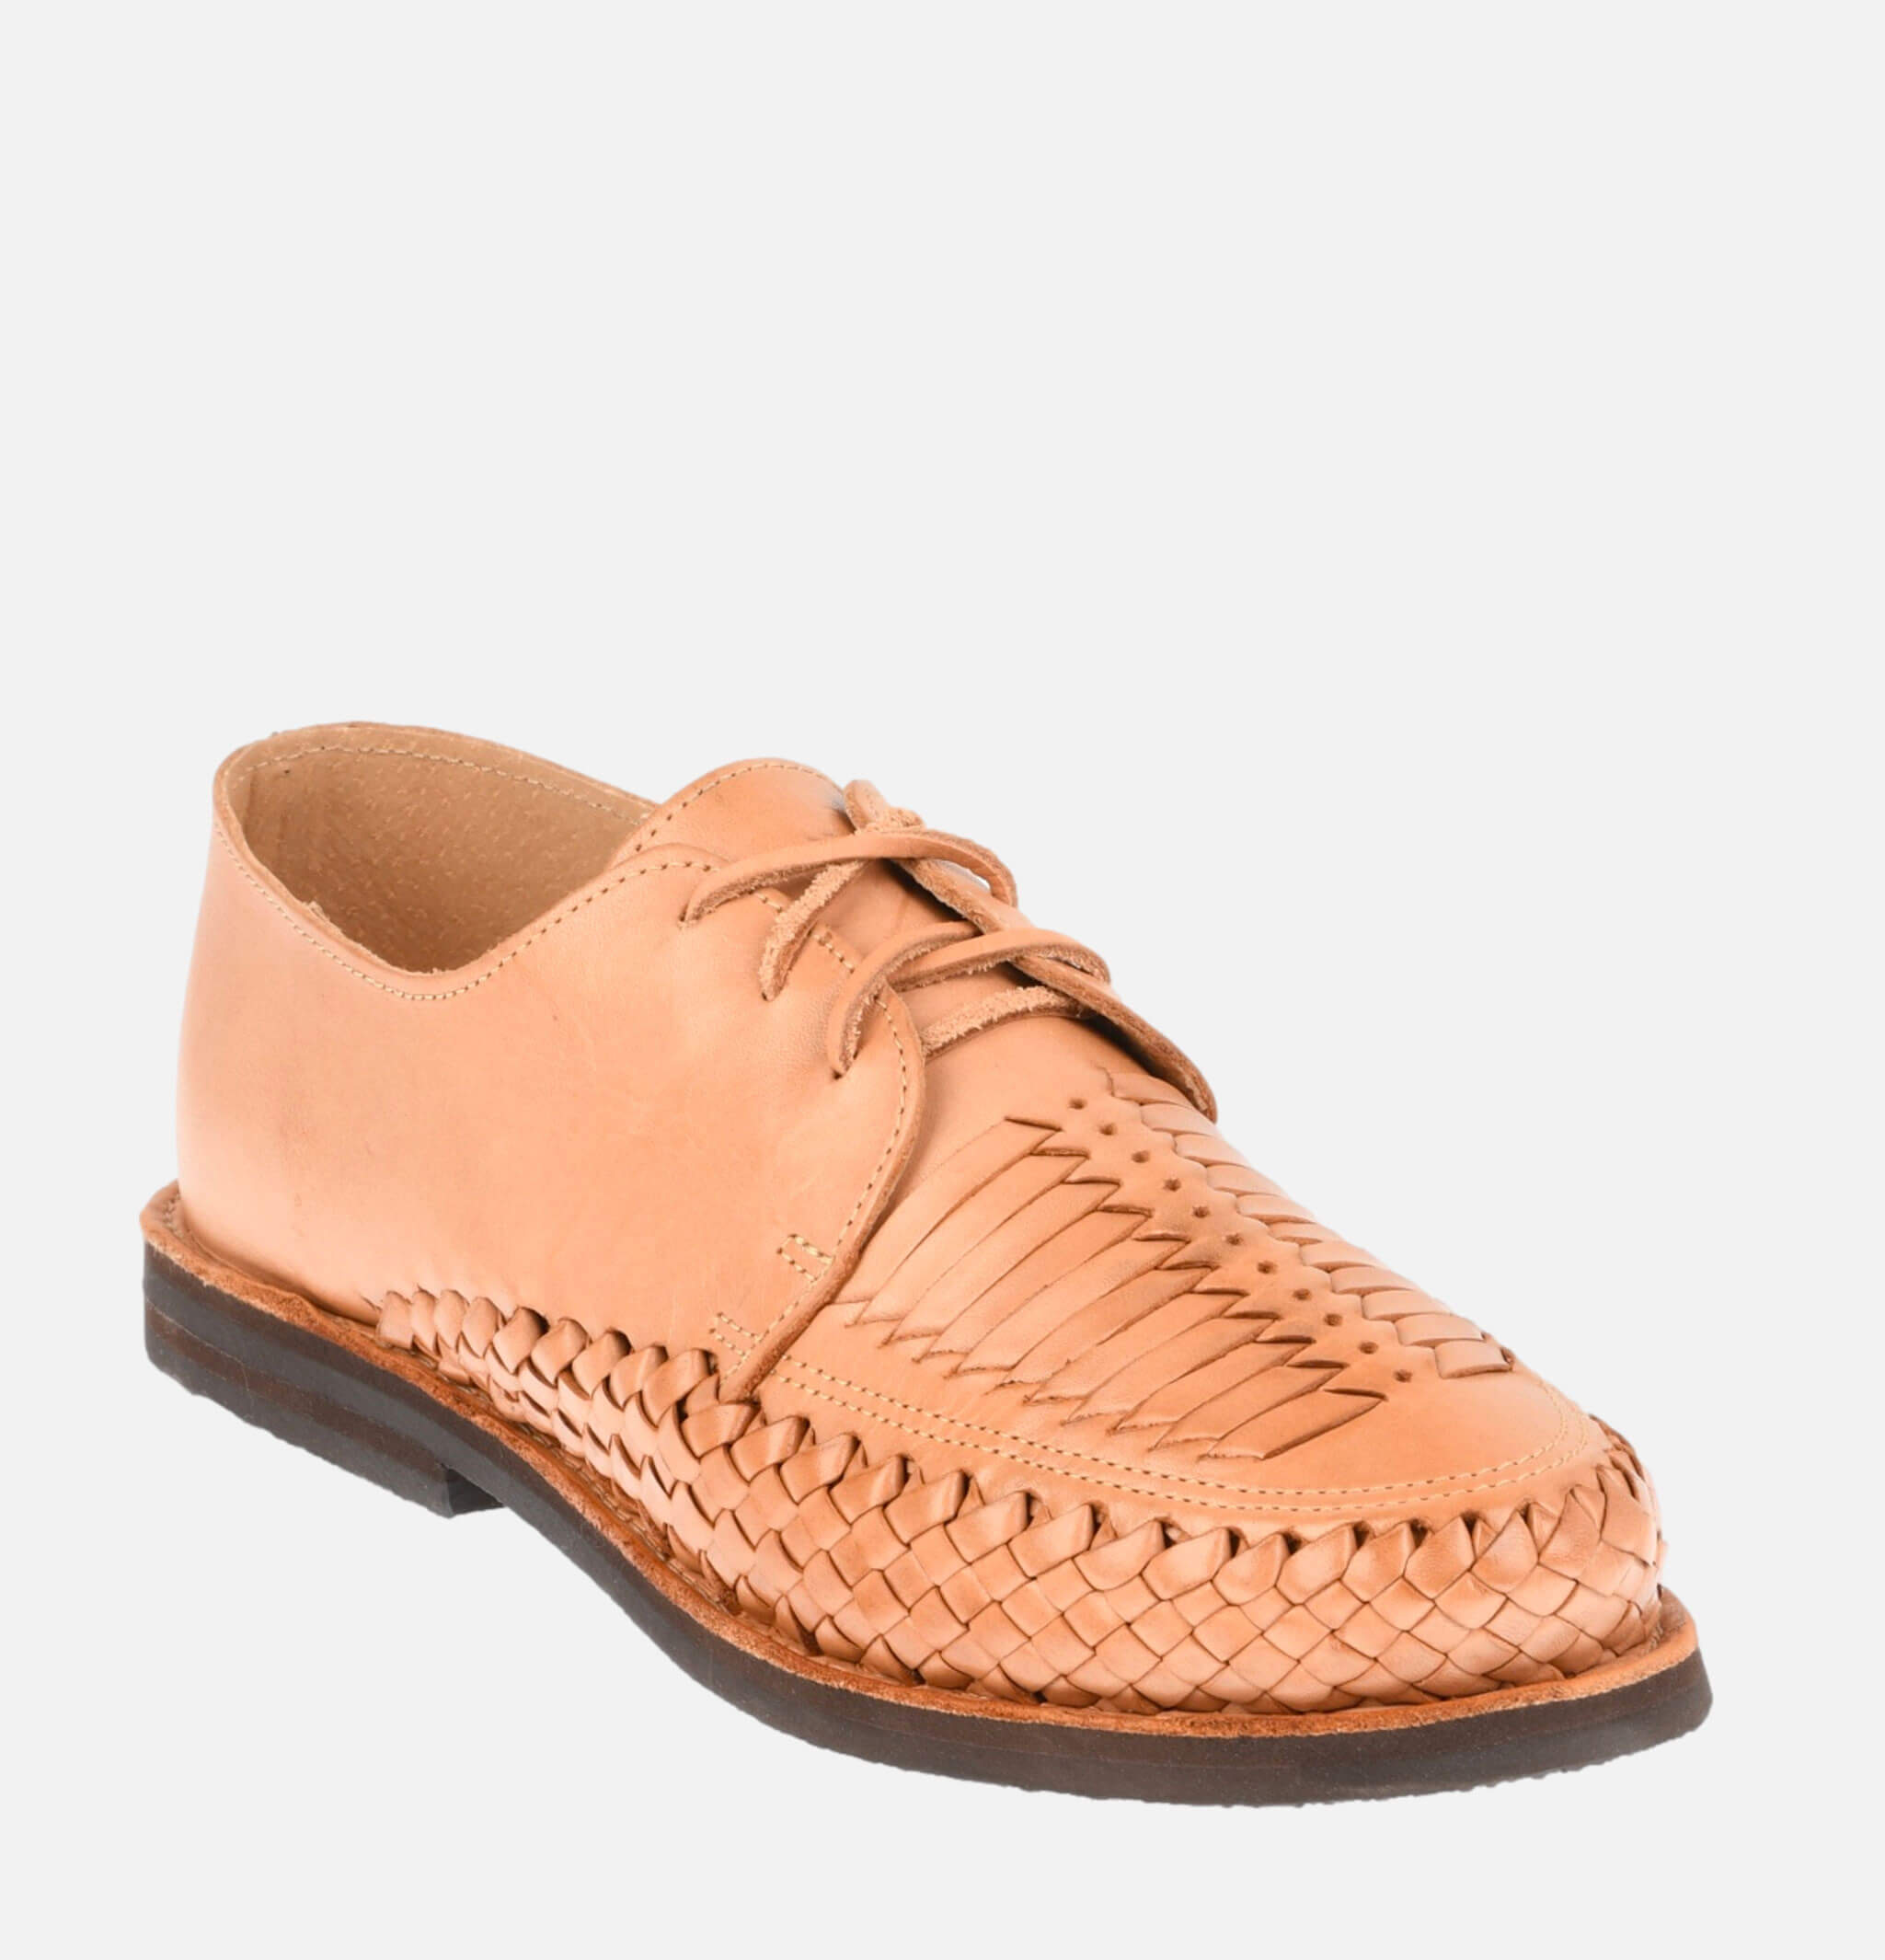 Chaussures Veracruz